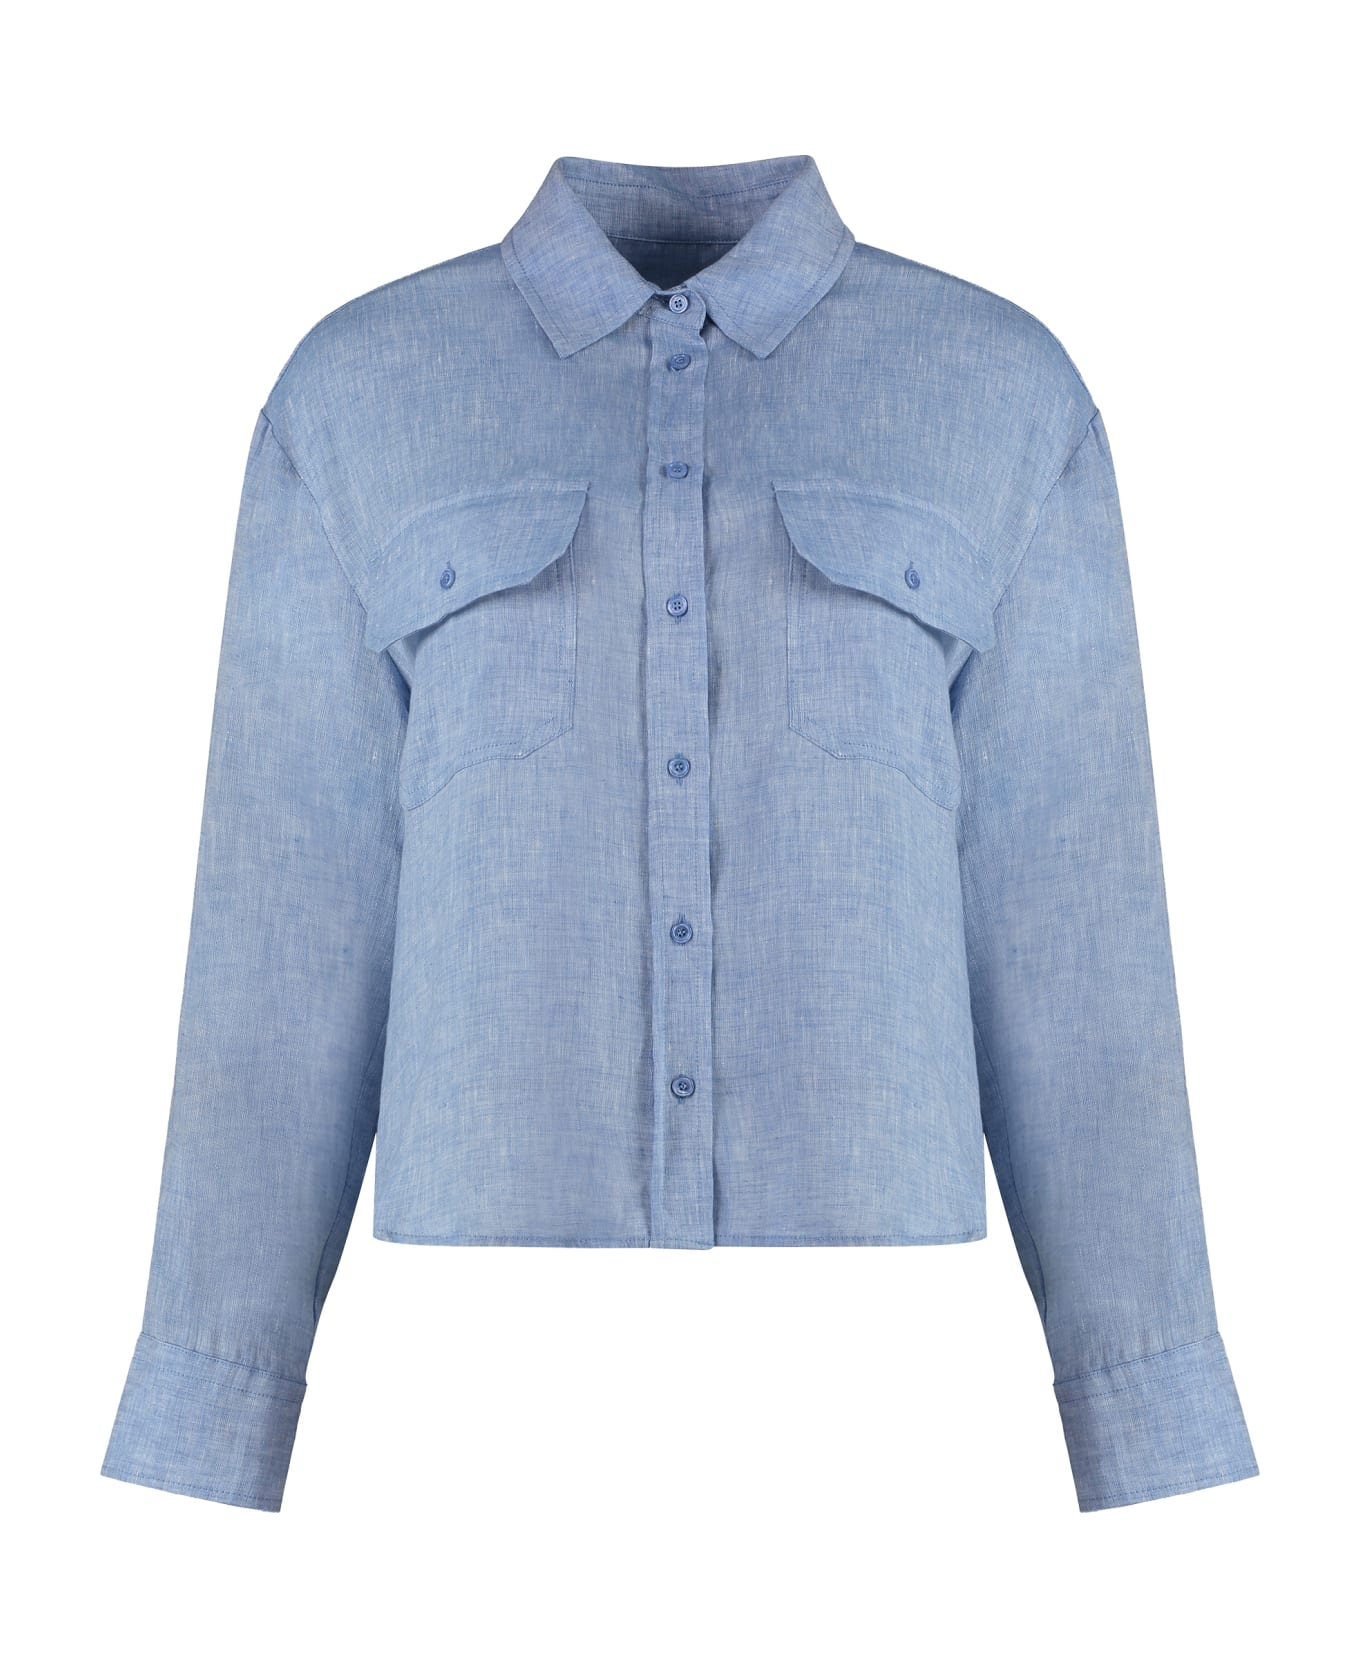 Weekend Max Mara Eureka Linen Shirt - Light Blue シャツ